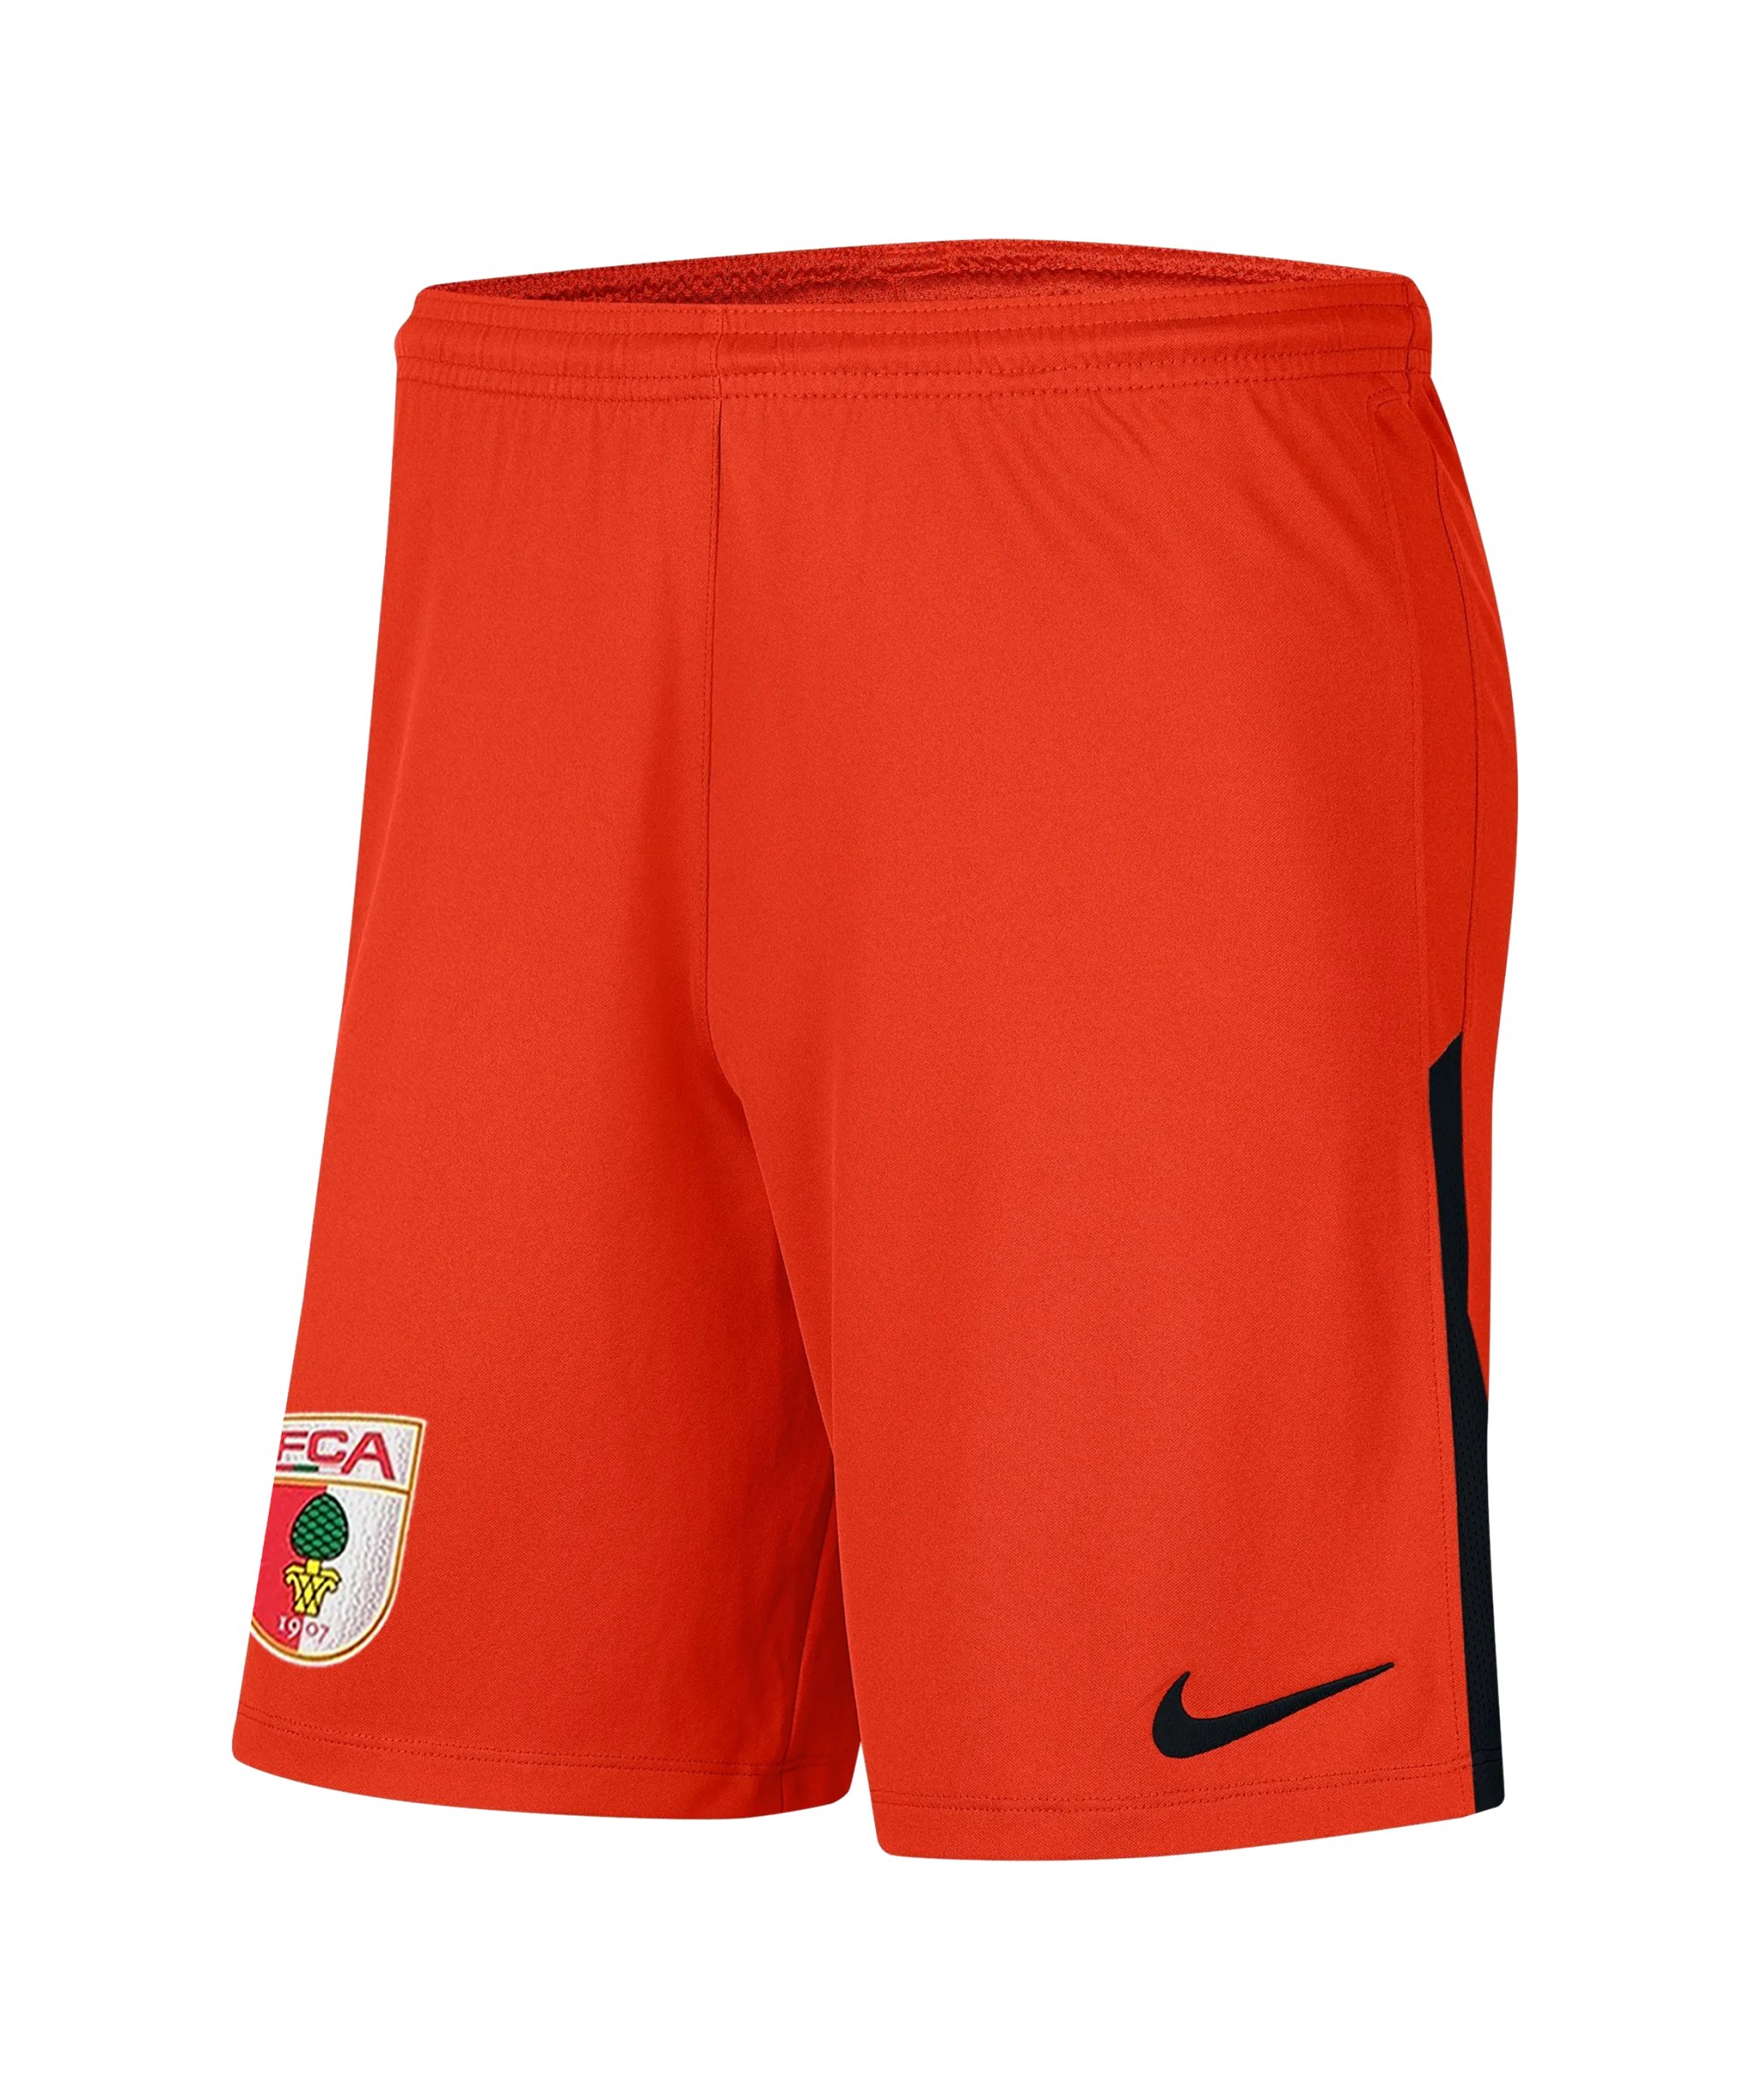 Nike FC Augsburg Torwartshort 2021/2022 F891 - orange